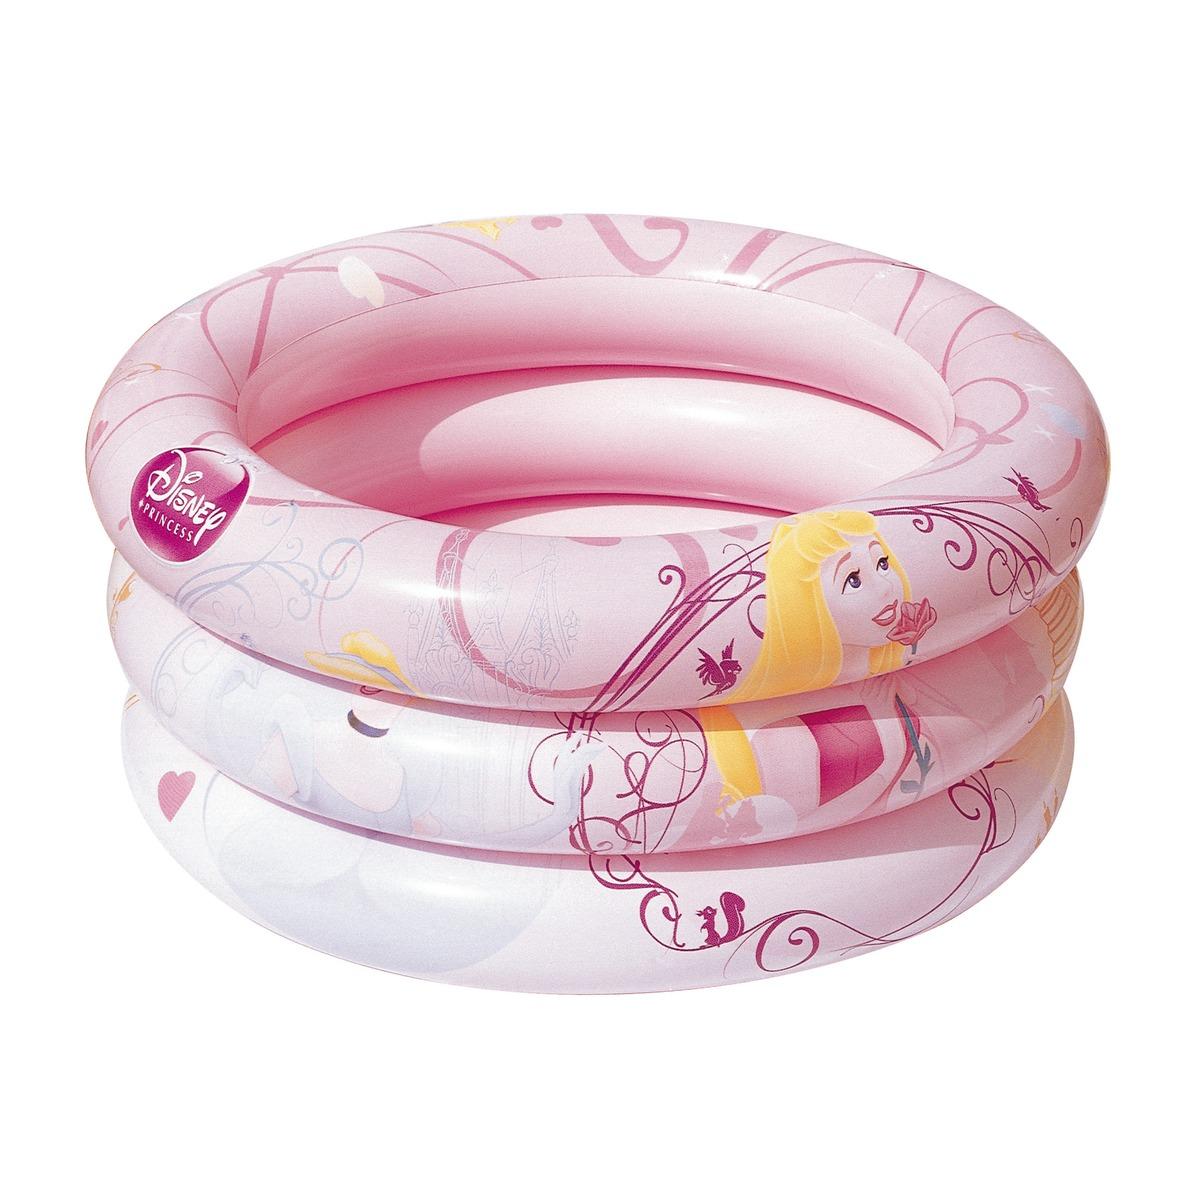 Piscine ronde 3 boudins décor princesse pour bébé - Diamètre 70 x H 30 cm - Rose